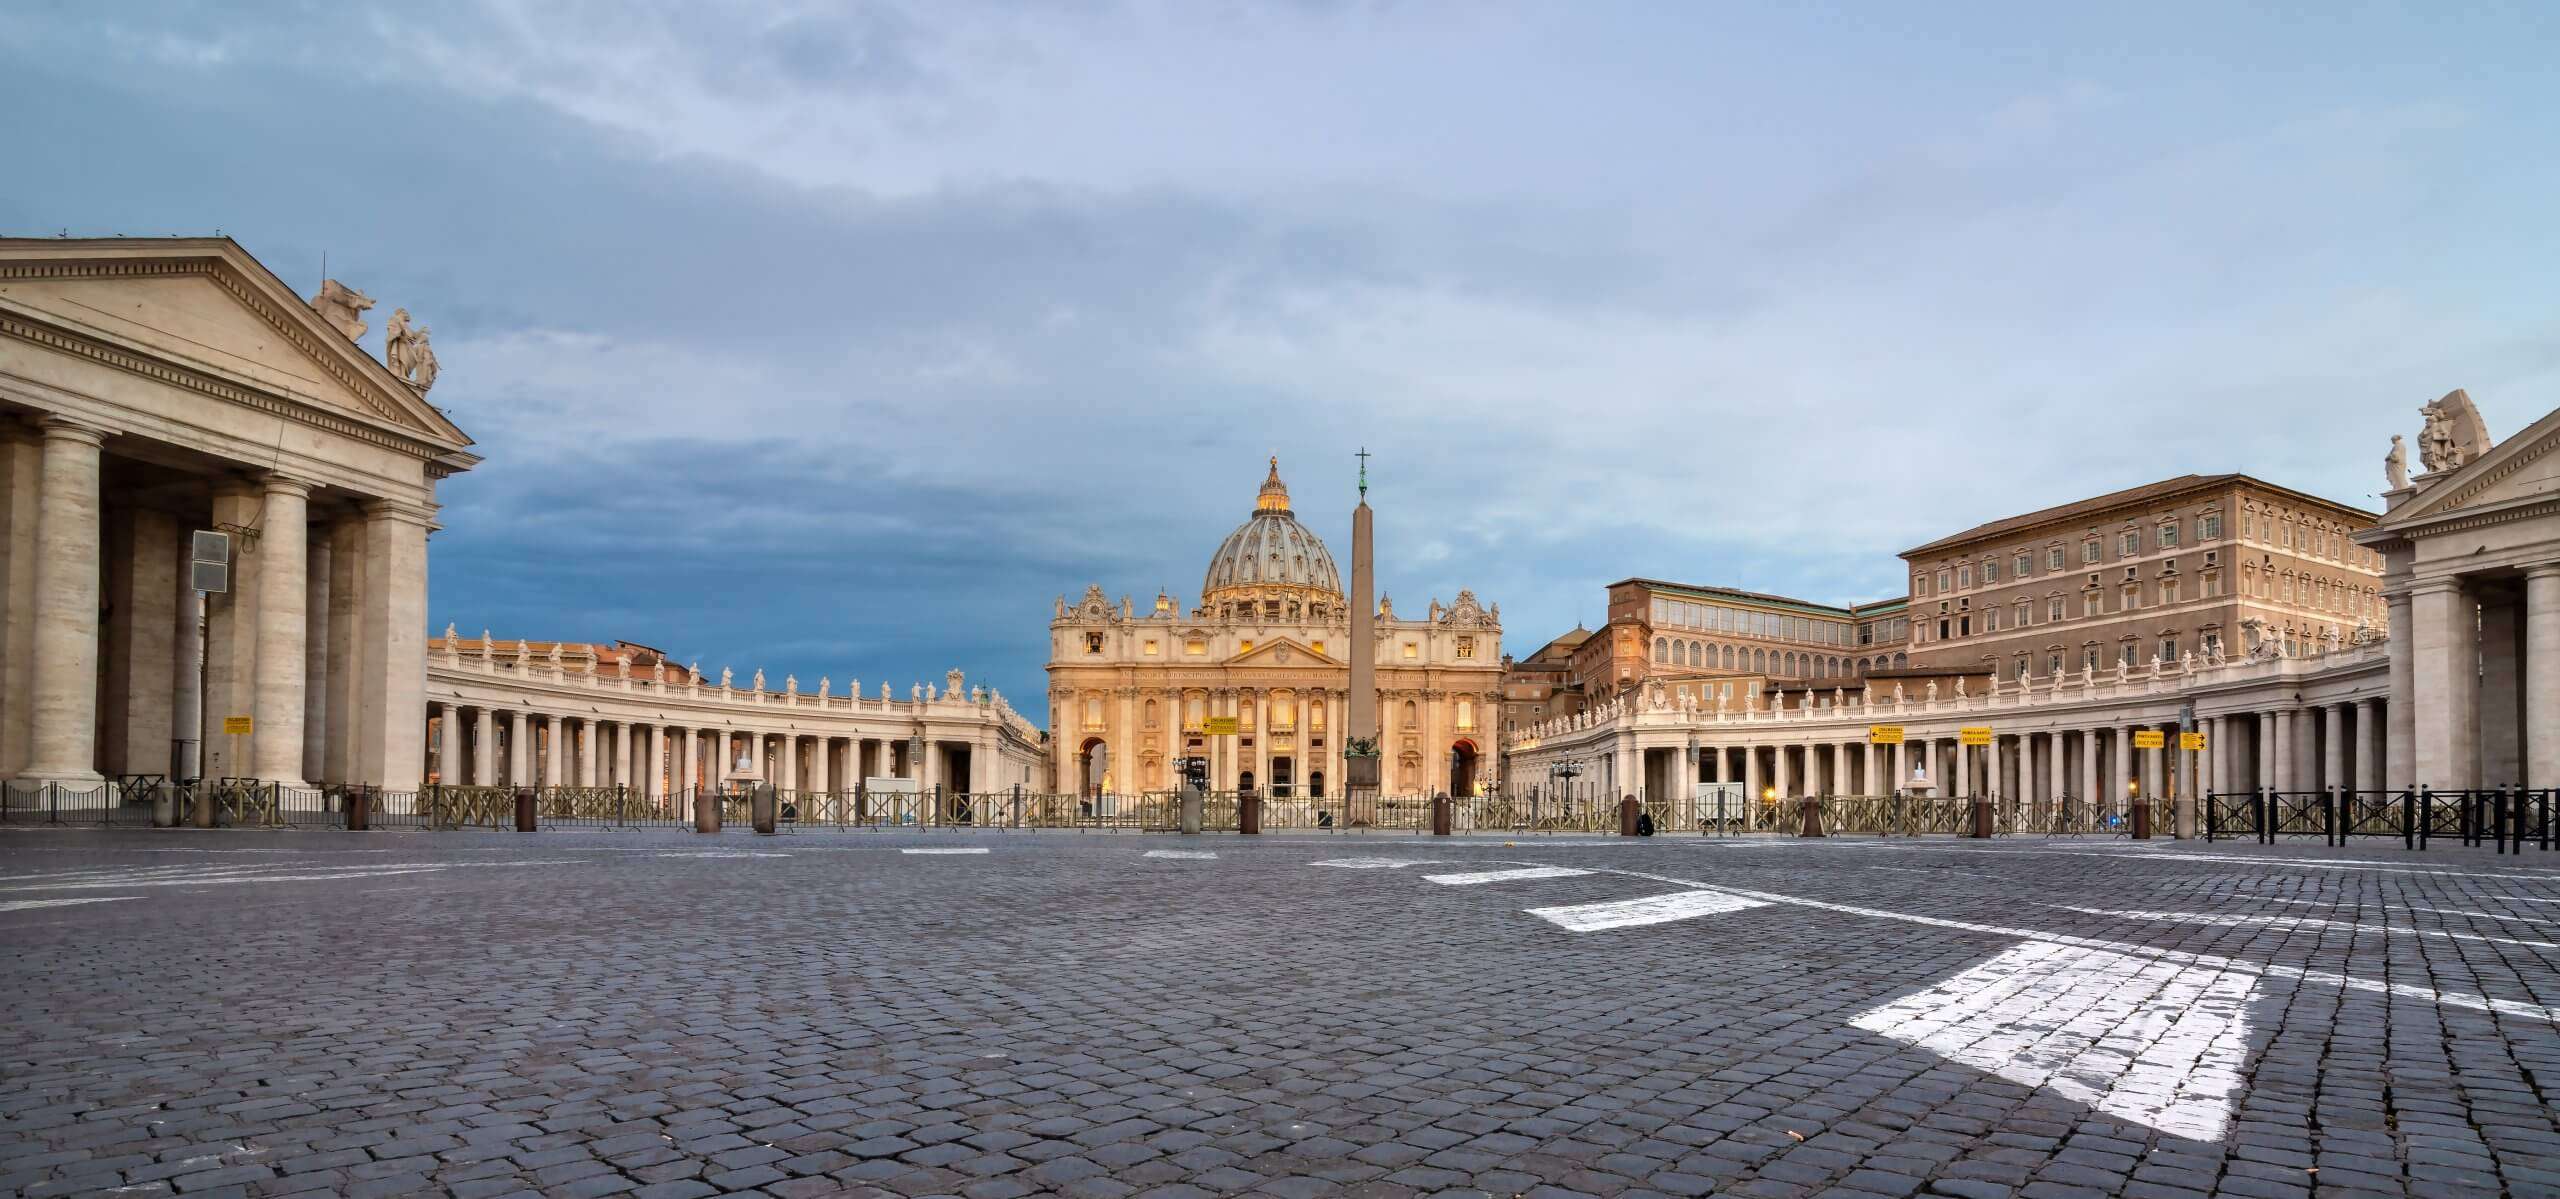 vatican in rome 2021 08 26 17 20 17 utc scaled